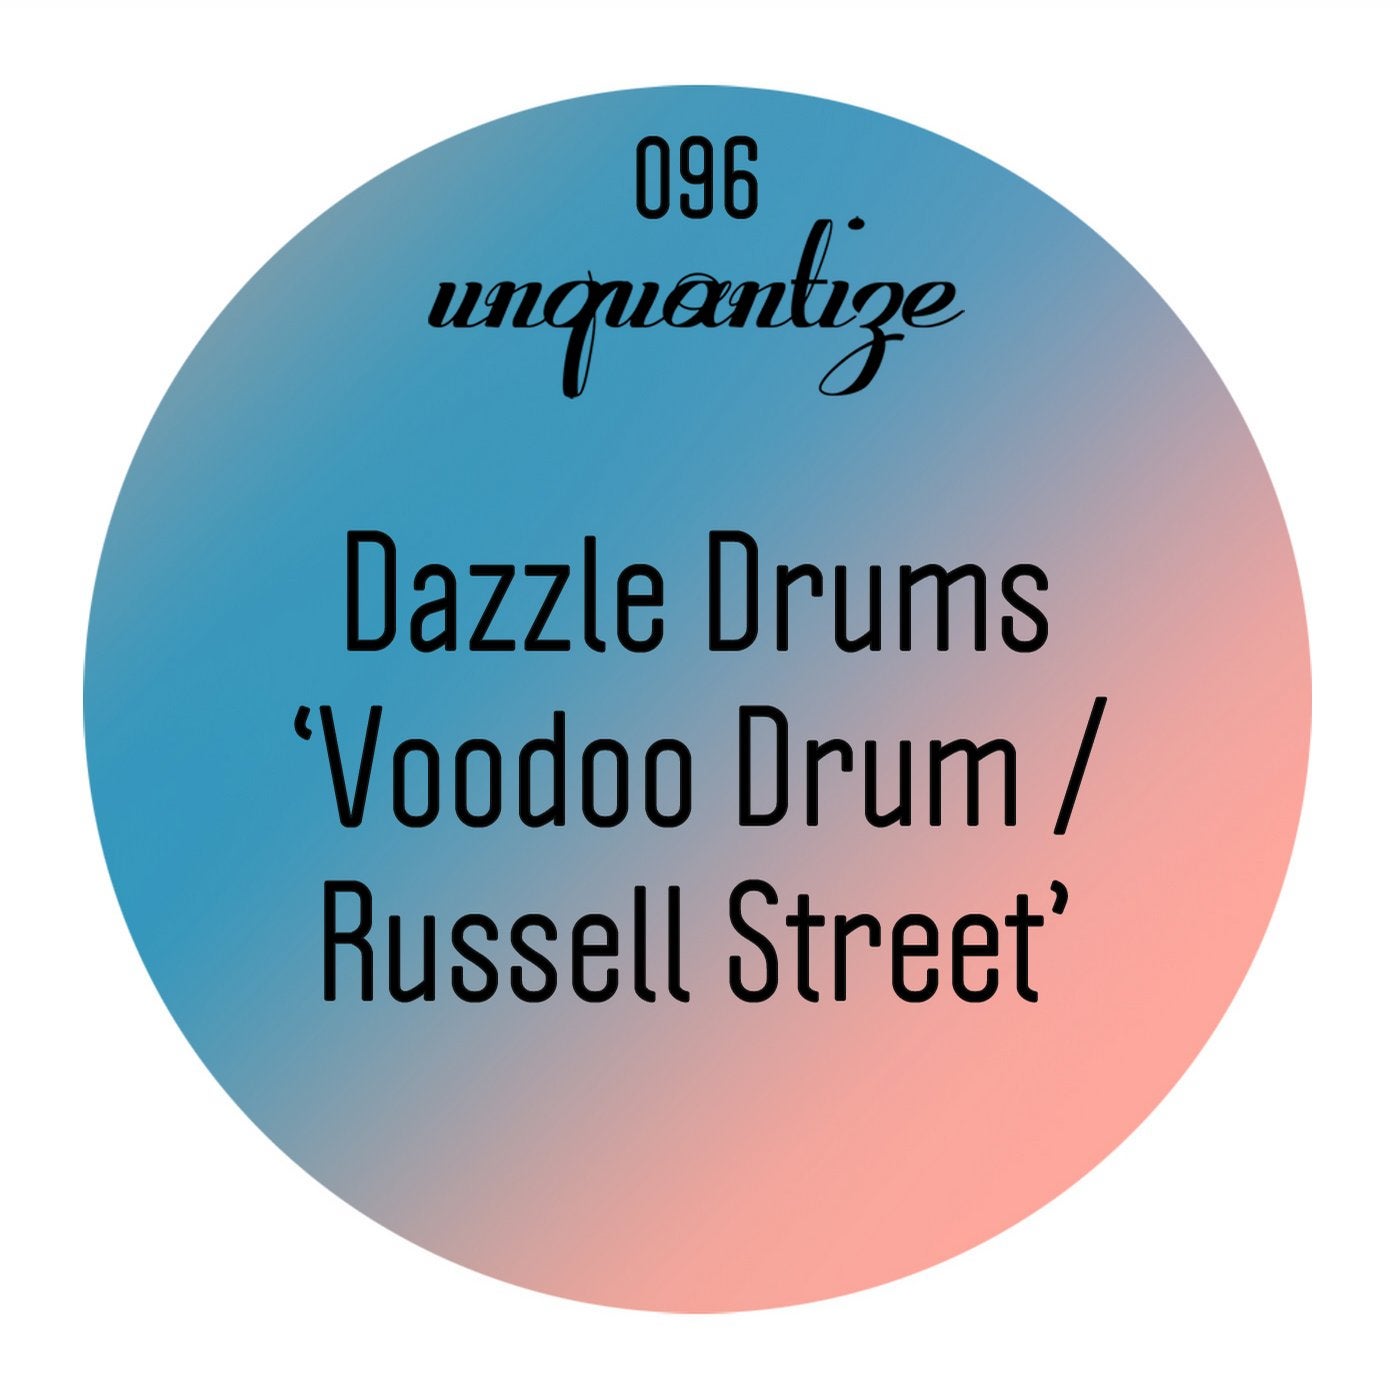 Voodoo Drum / Russell Street